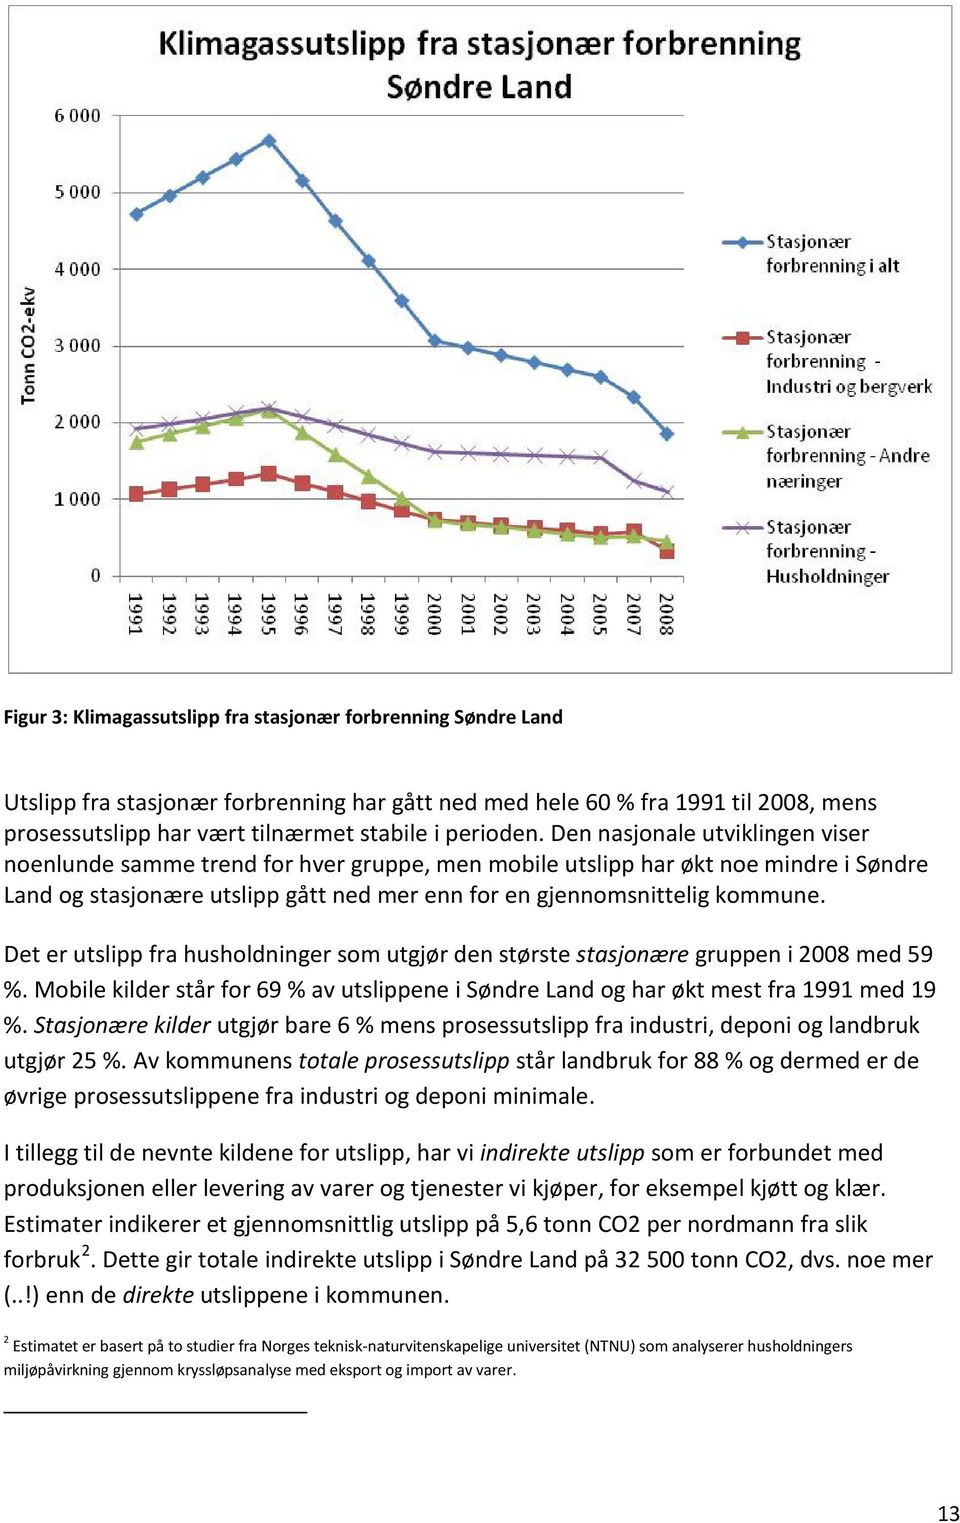 Den nasjonale utviklingen viser noenlunde samme trend for hver gruppe, men mobile utslipp har økt noe mindre i Søndre Land og stasjonære utslipp gått ned mer enn for en gjennomsnittelig kommune.